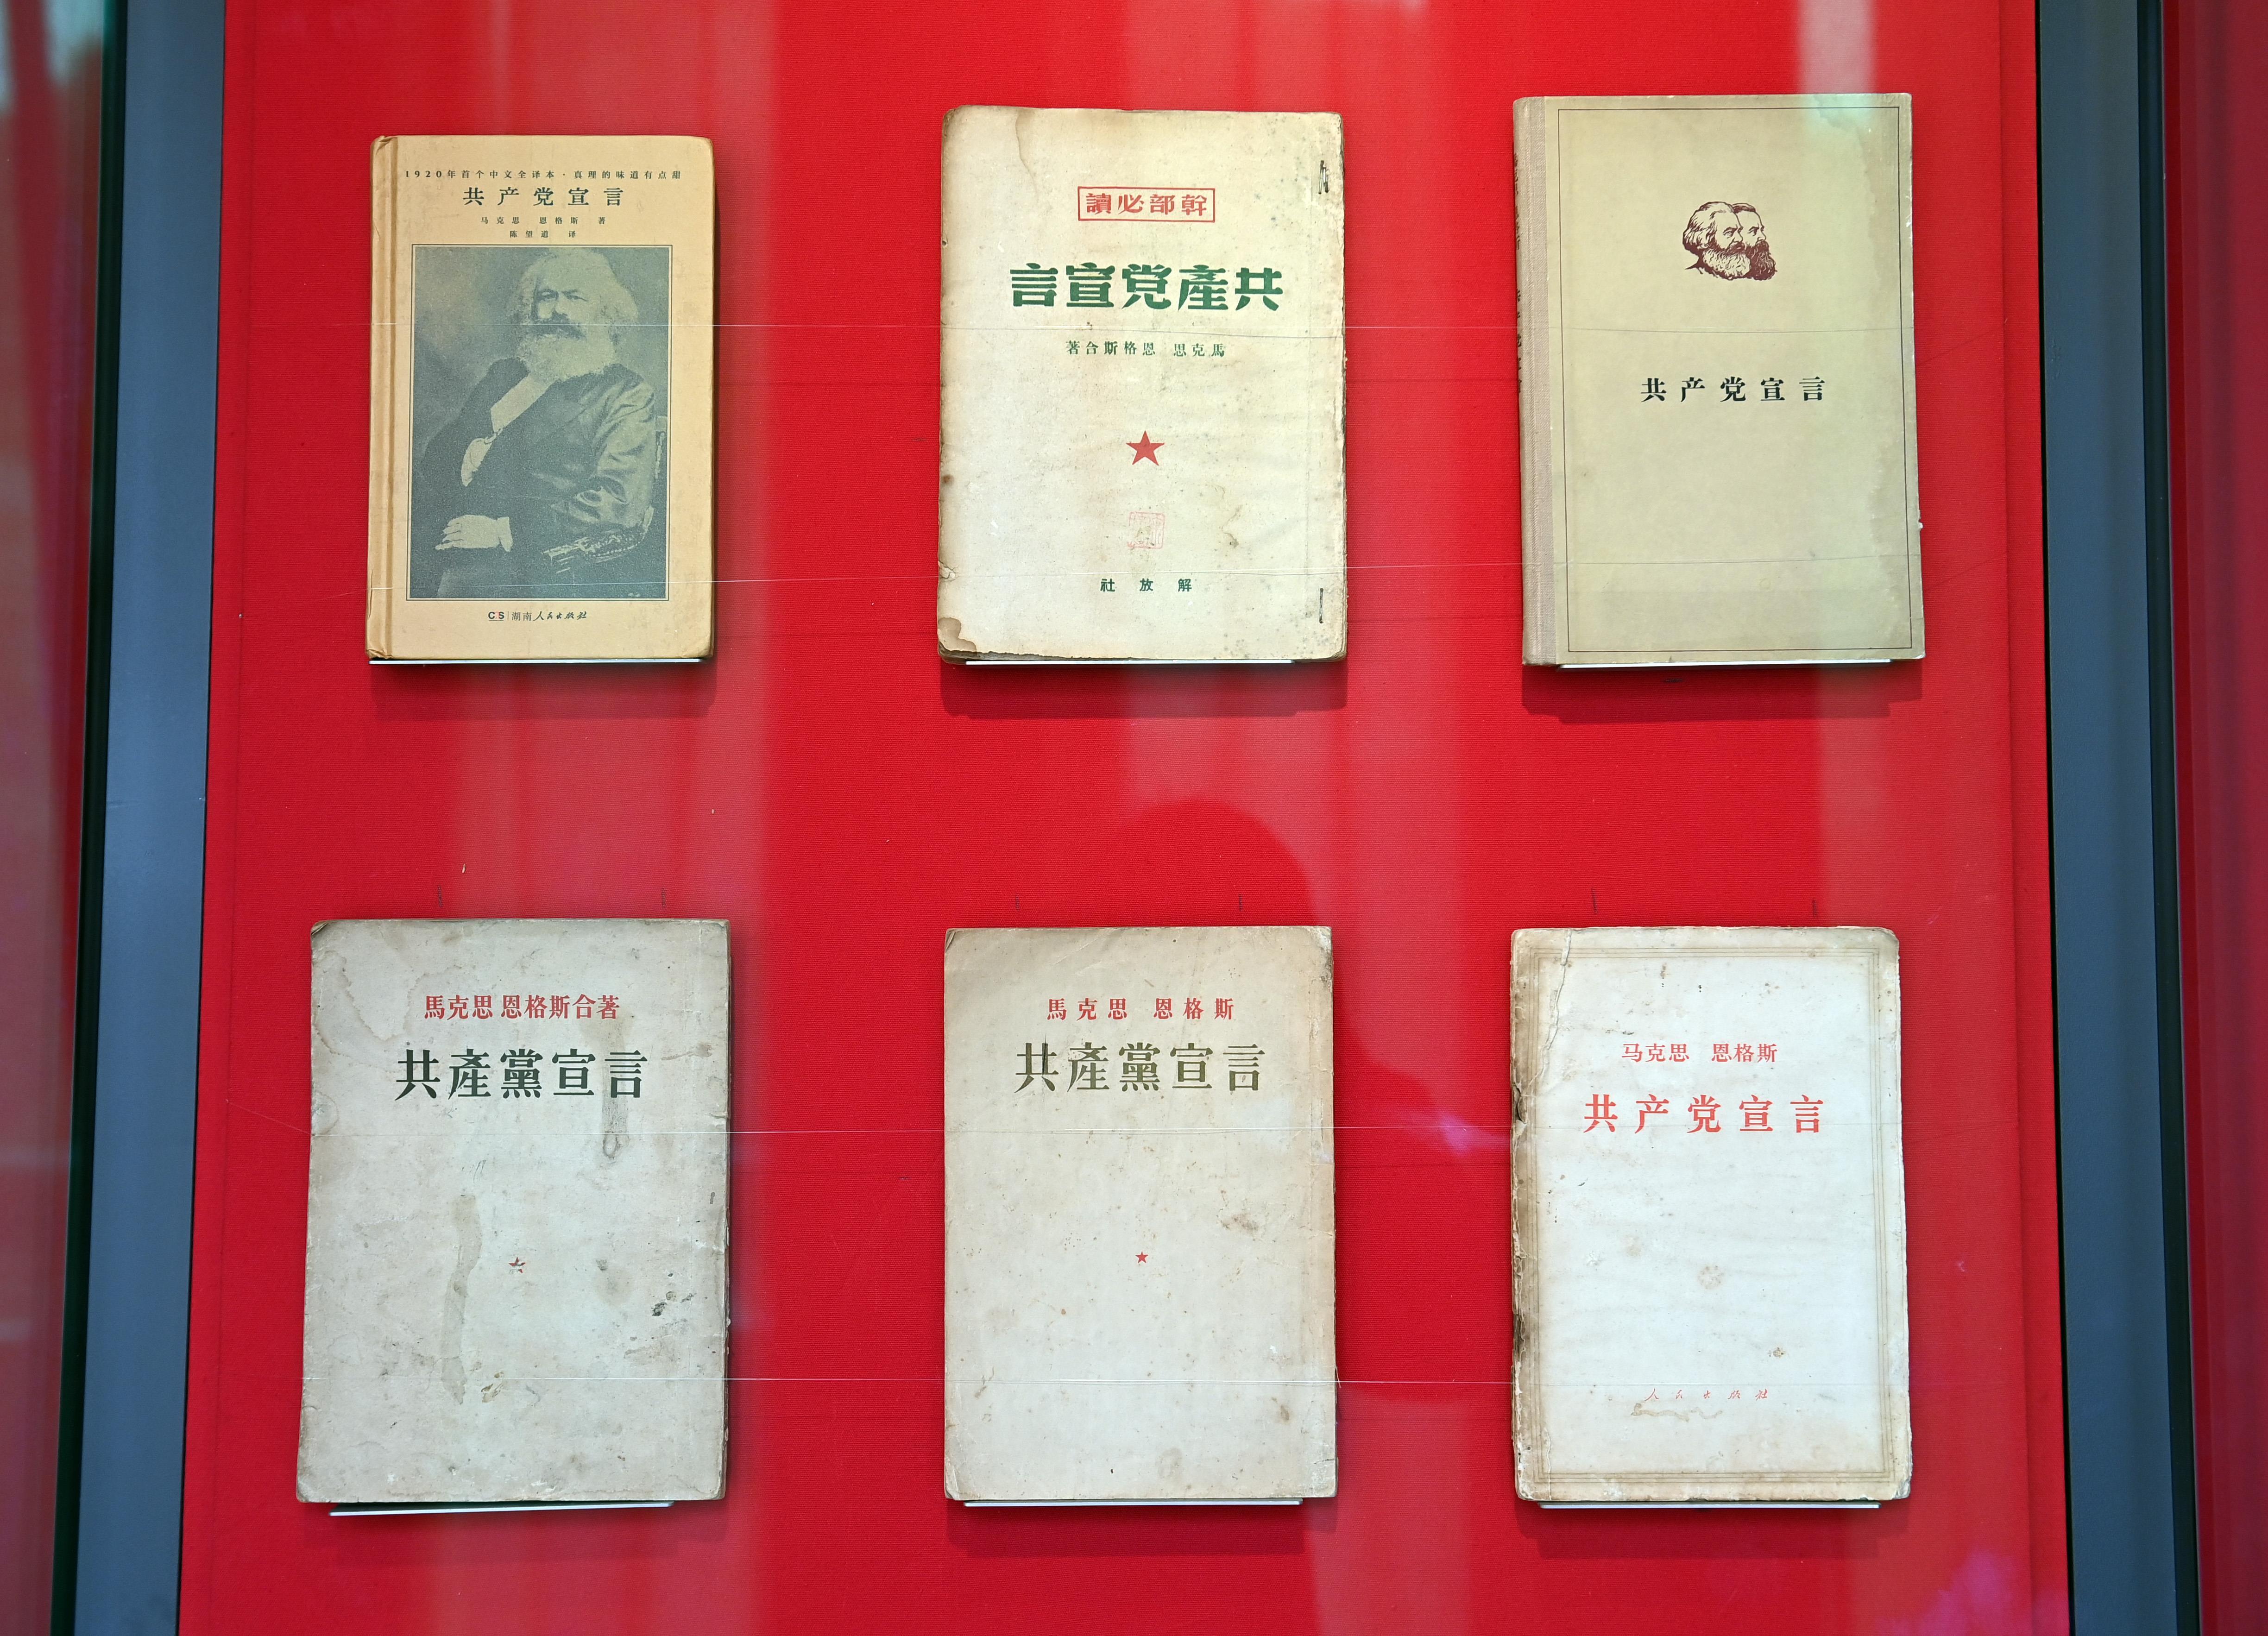 △中国国家版本馆中央总馆展示的不同版本的《共产党宣言》。